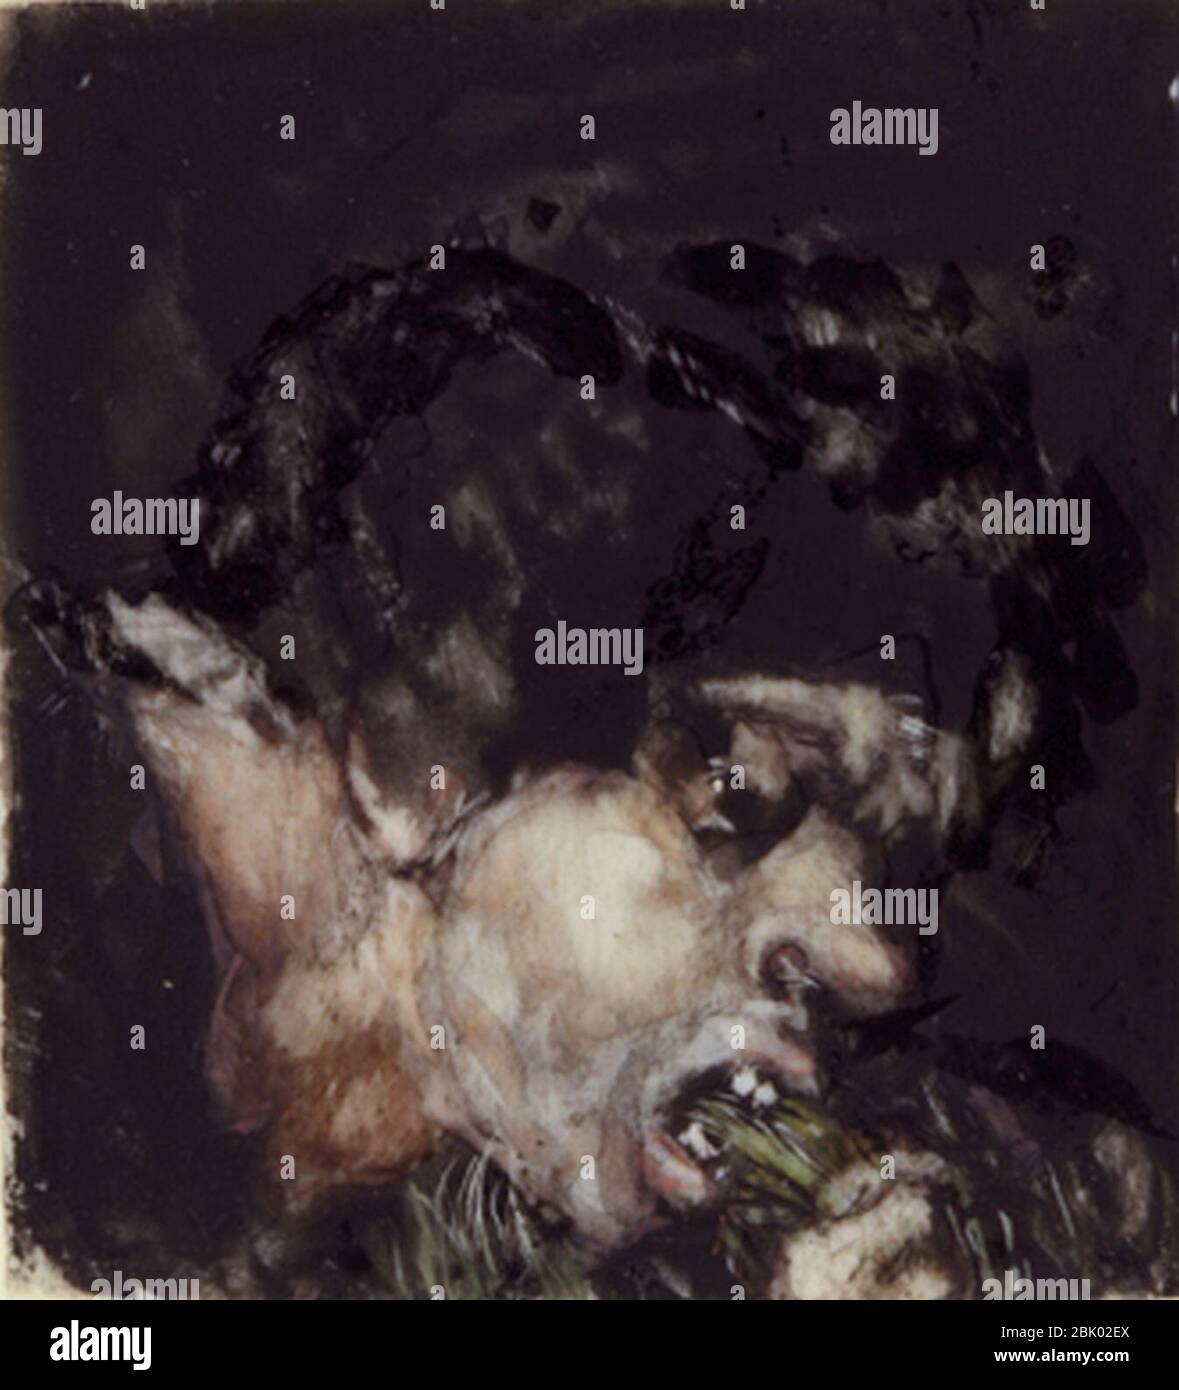 Hombre comiendo puerros Francisco de Goya. Stock Photo